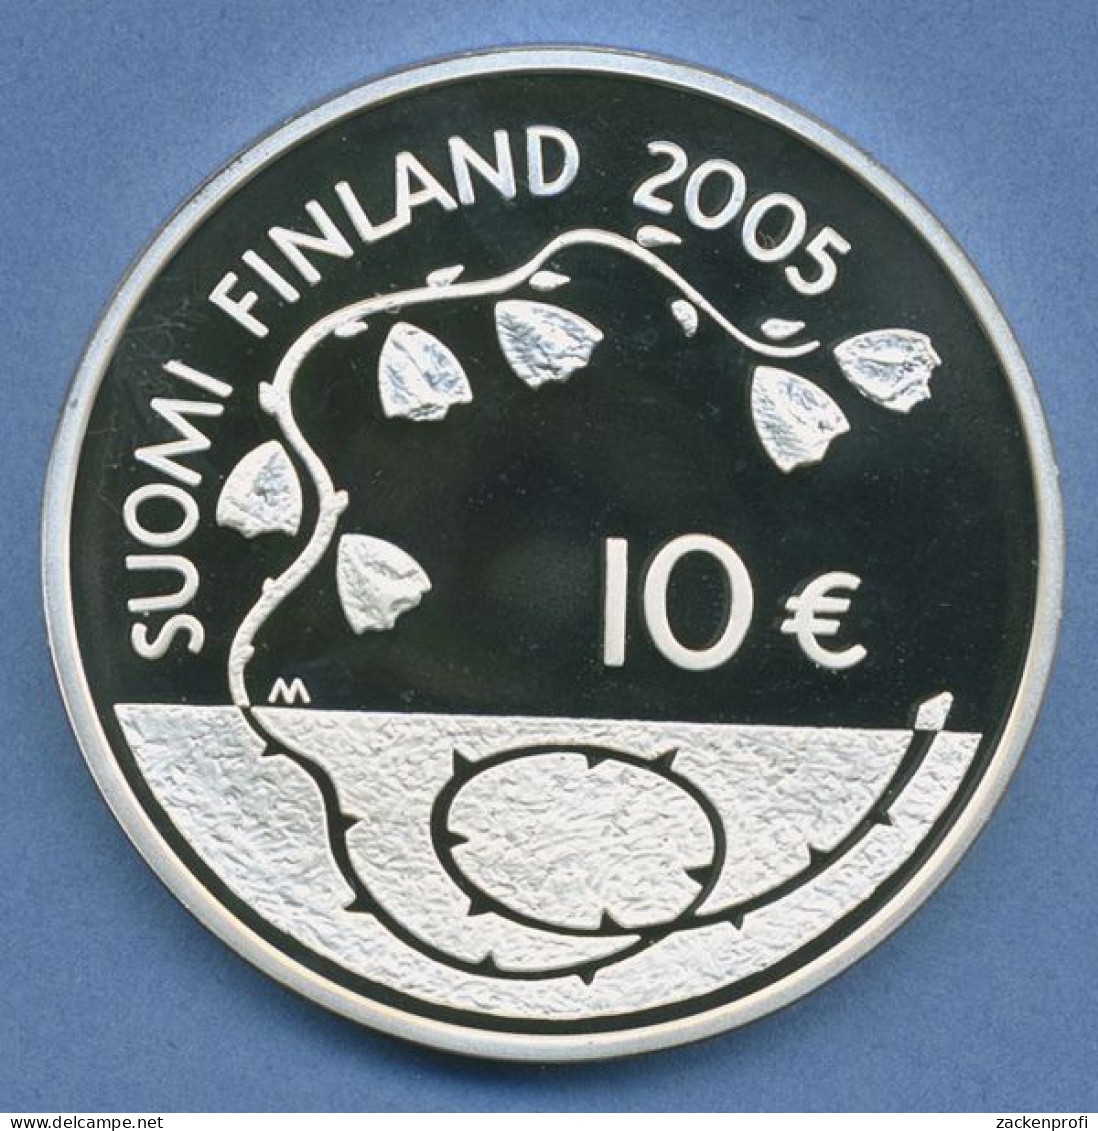 Finnland 10 Euro 2005 Frieden In Europa Friedenstaube, Silber, KM 120 PP (m4458) - Finlandia